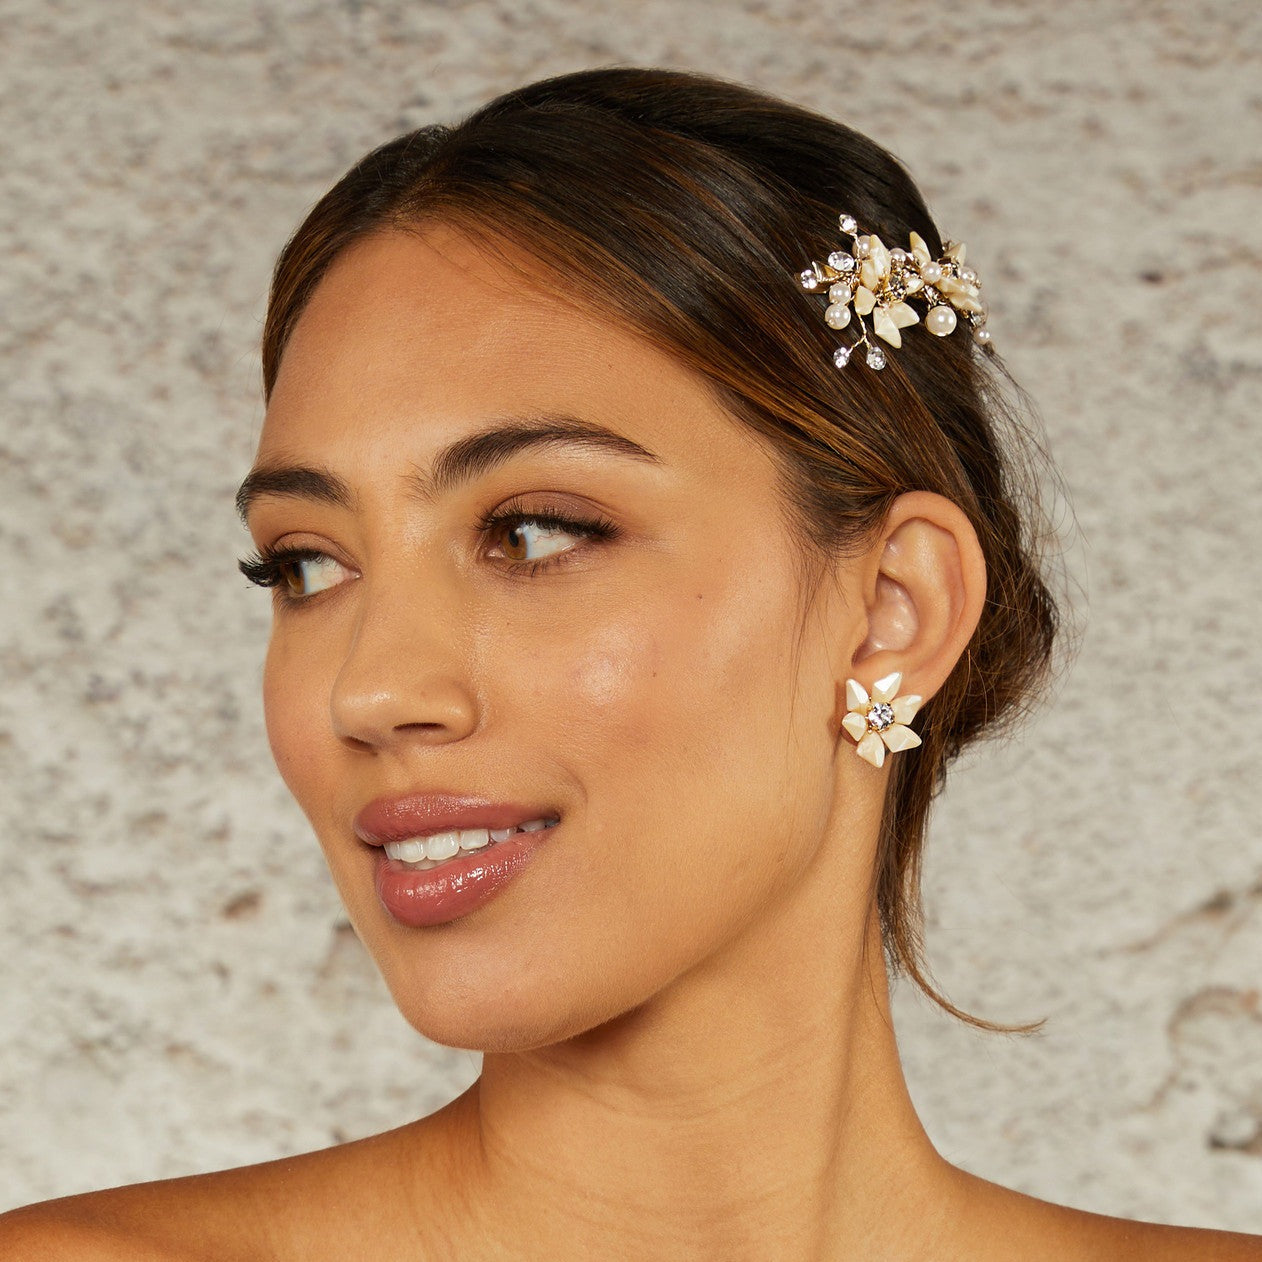 Ivory flower earrings for the bride model